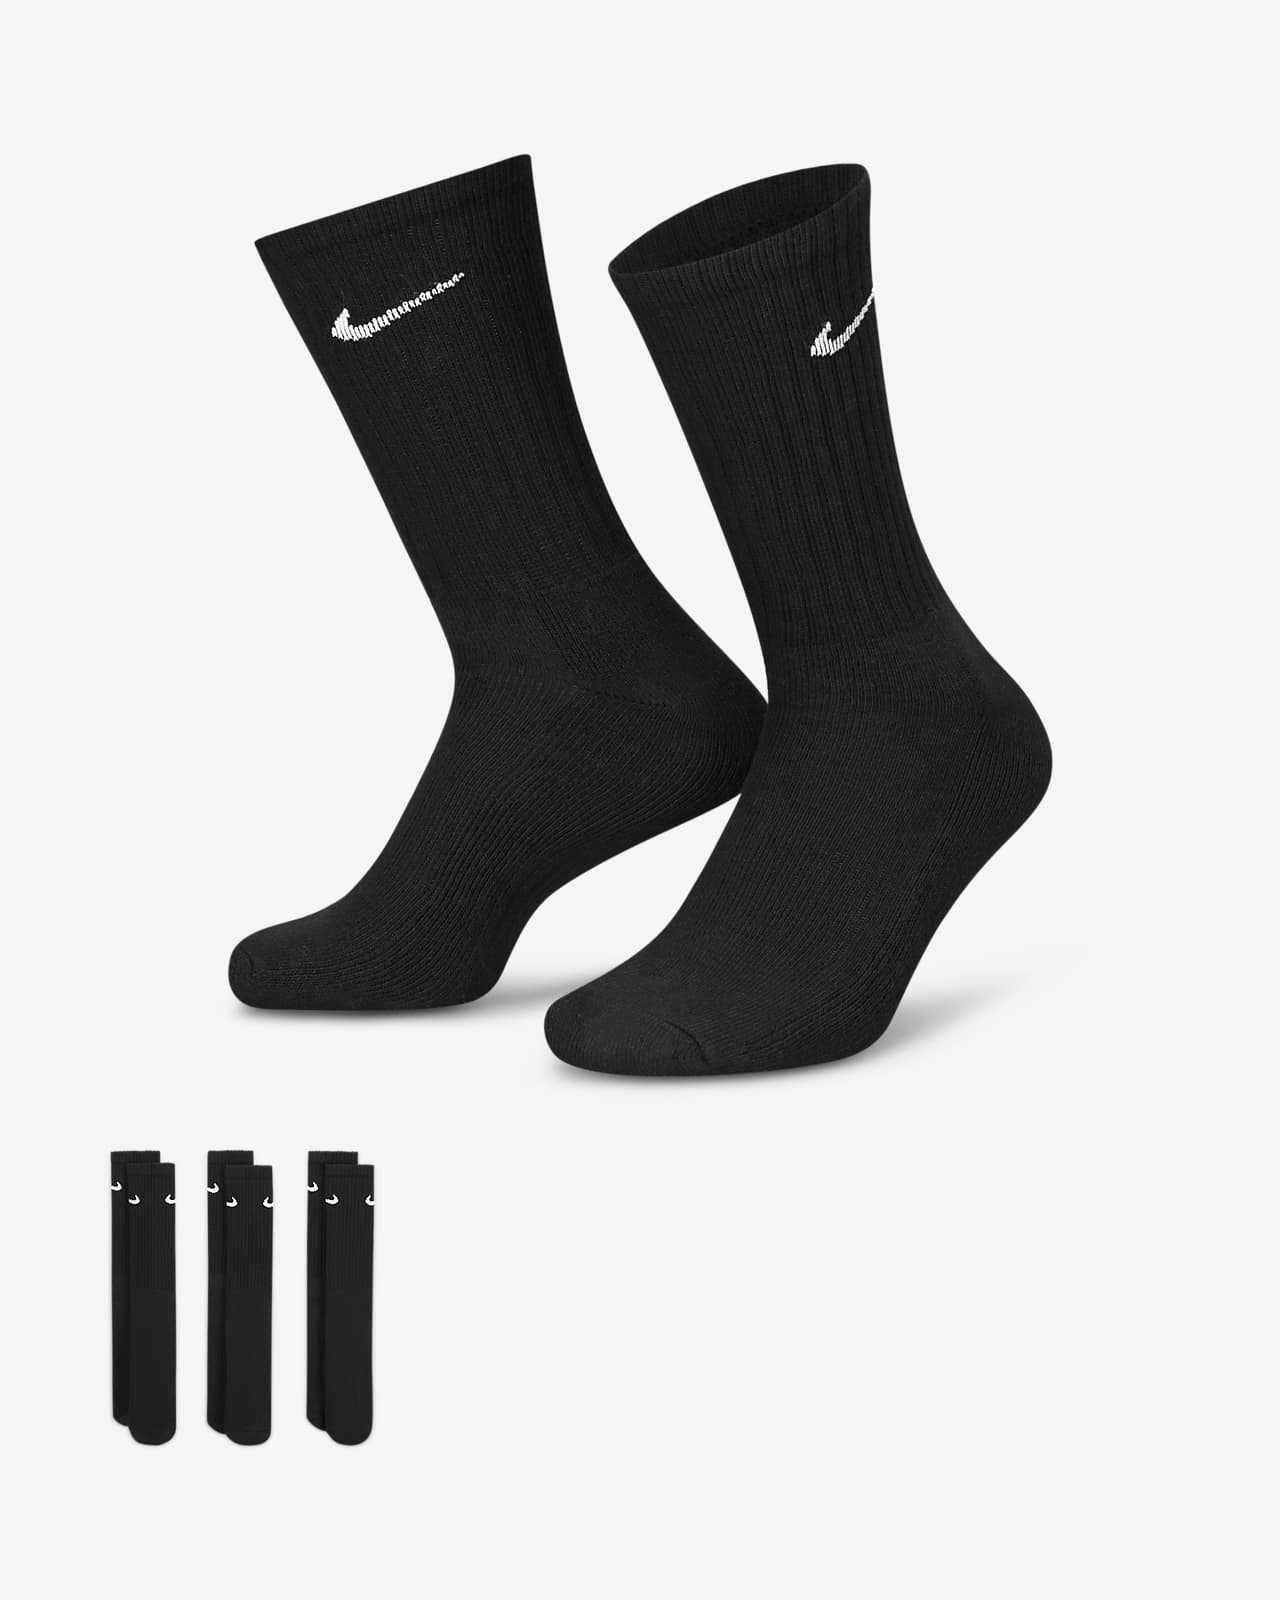 Κάλτσες προπόνησης μεσαίου ύψους Nike Cushioned (τρία ζευγάρια)